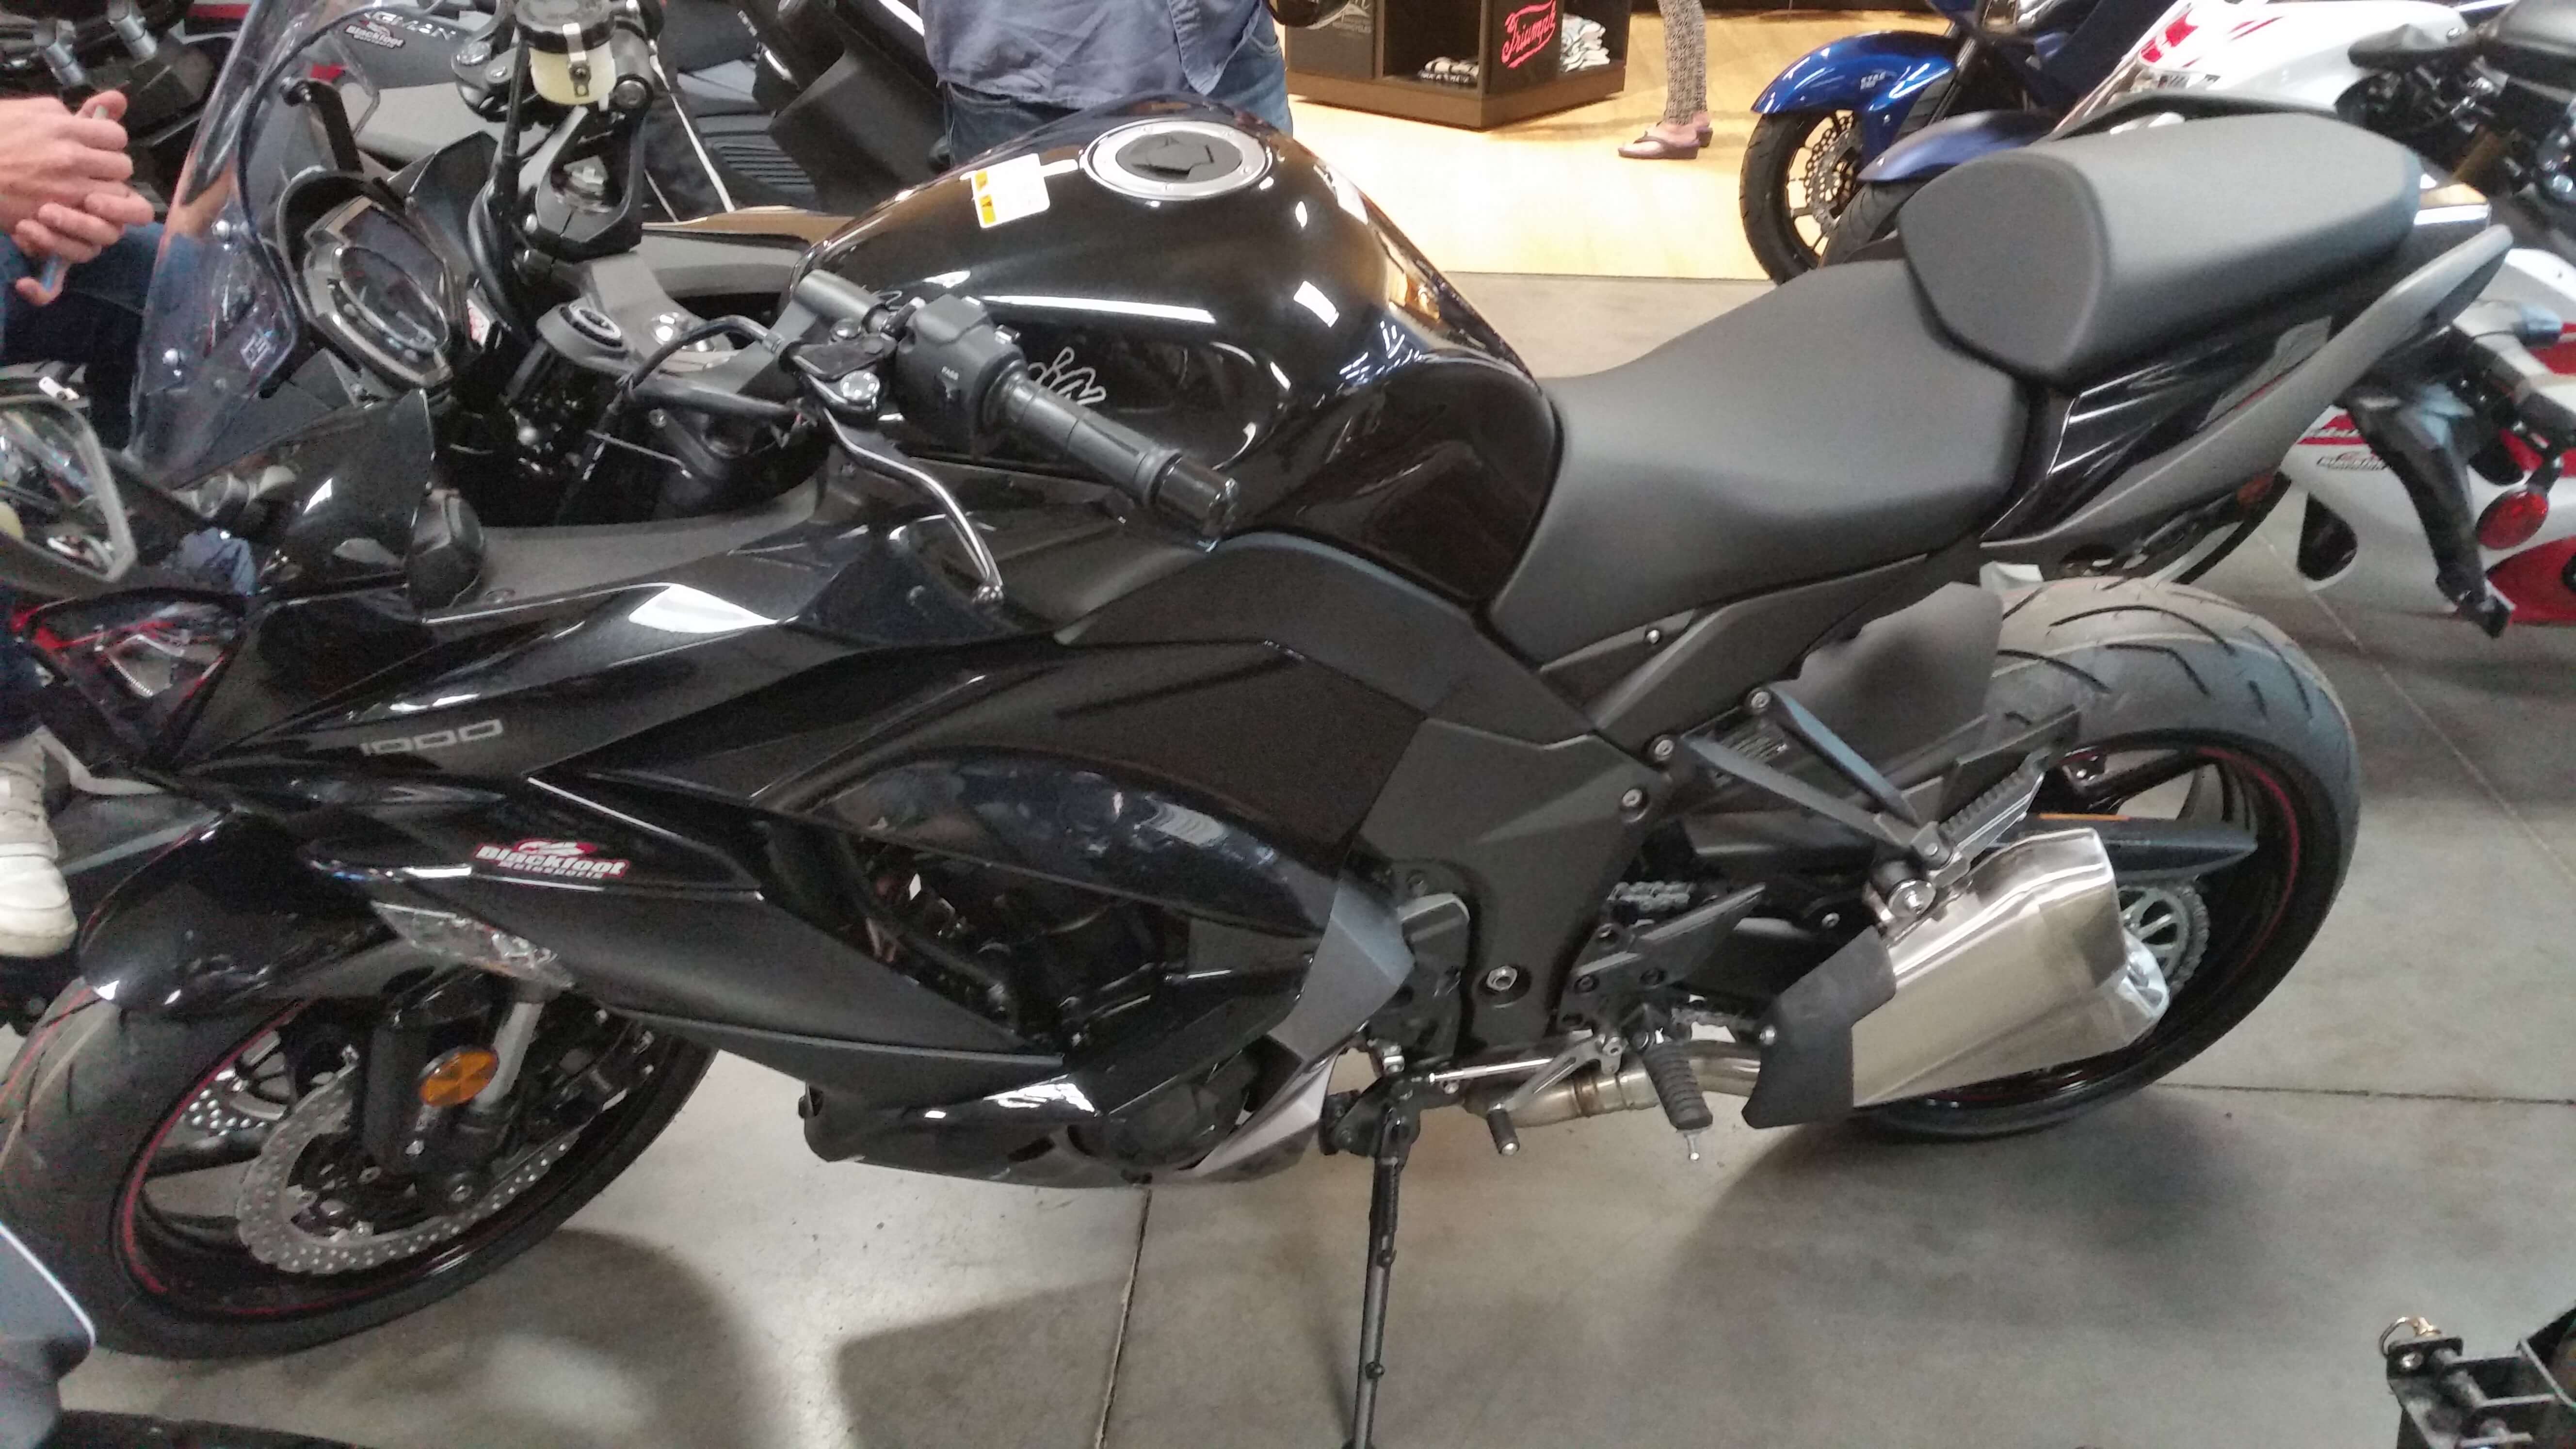 2018 Kawasaki Ninja 1000 ABS in black at showroom